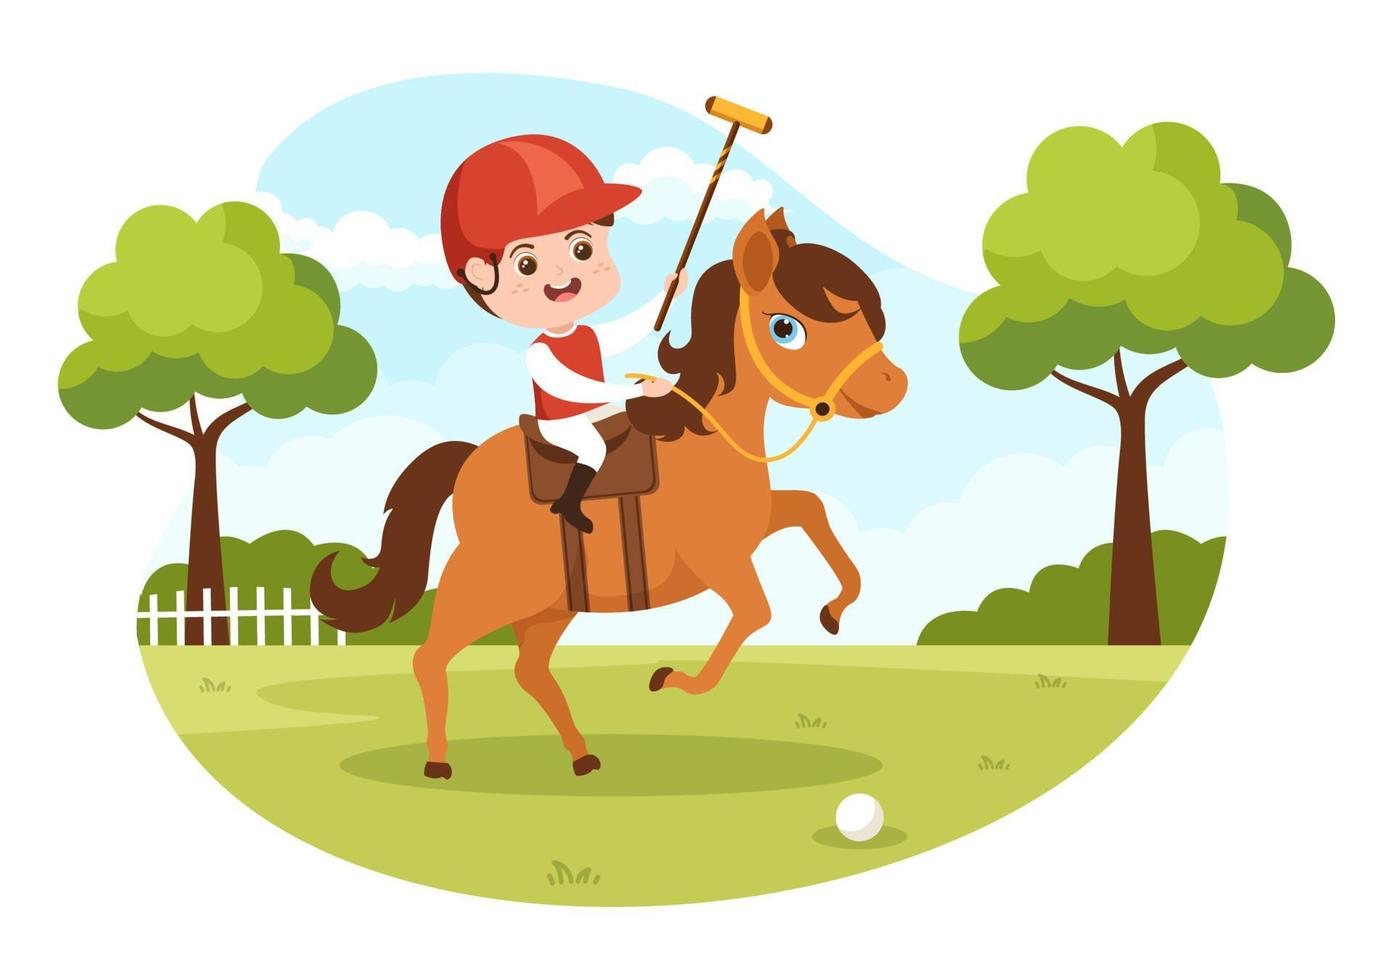 polo häst sporter med barn spelare ridning häst och innehav pinne använda sig av Utrustning uppsättning i platt tecknad serie affisch hand dragen mall illustration vektor